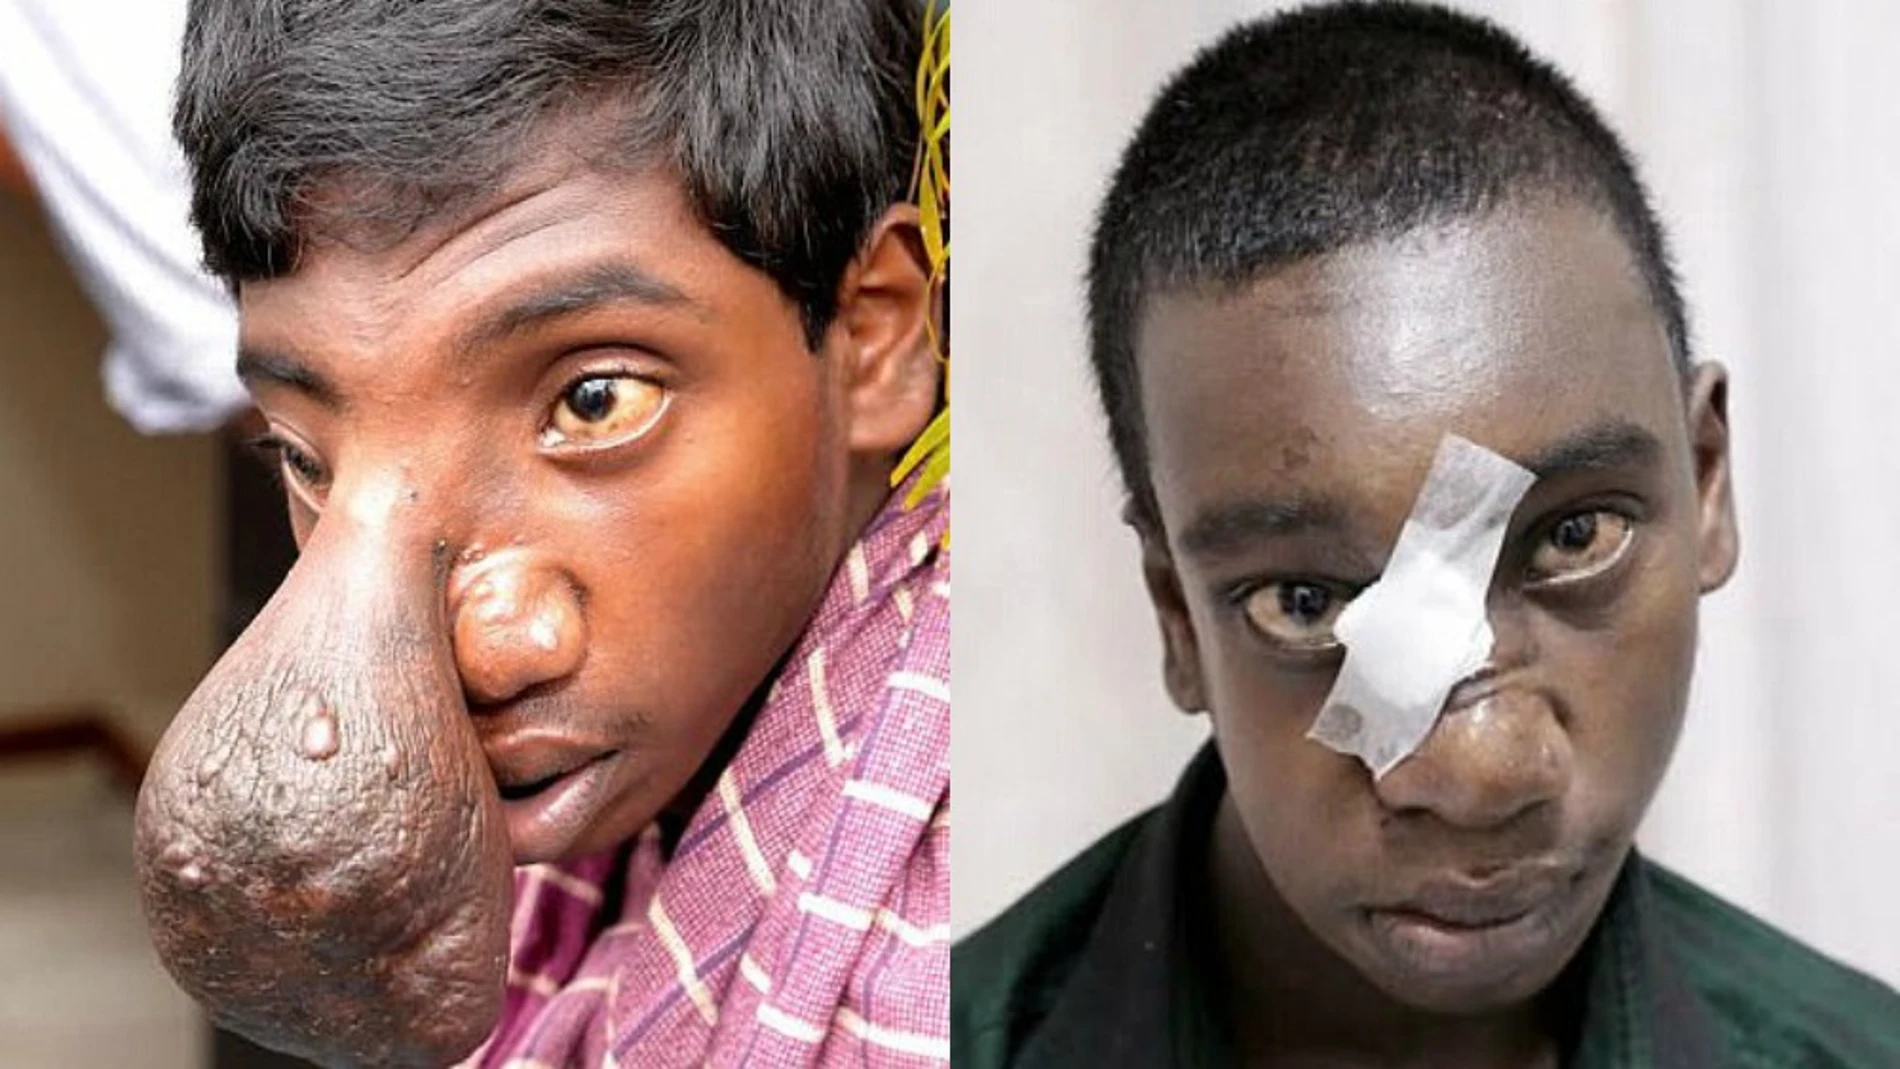 El joven Manikandan tras someterse a la operación